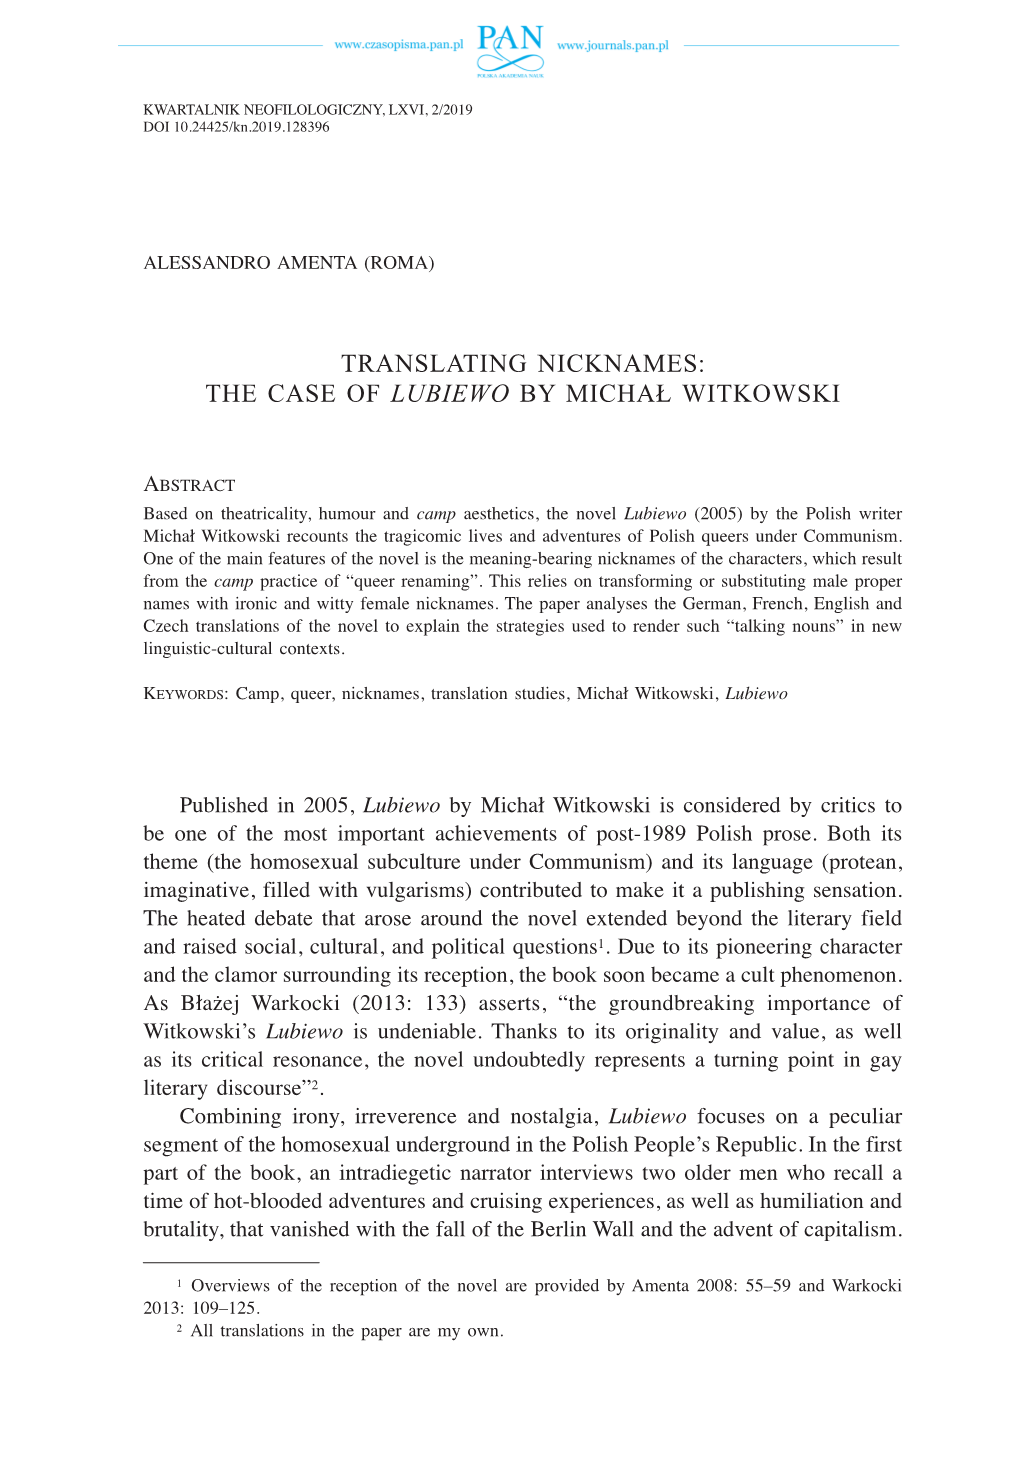 Translating Nicknames: the Case of Lubiewo by Michał Witkowski